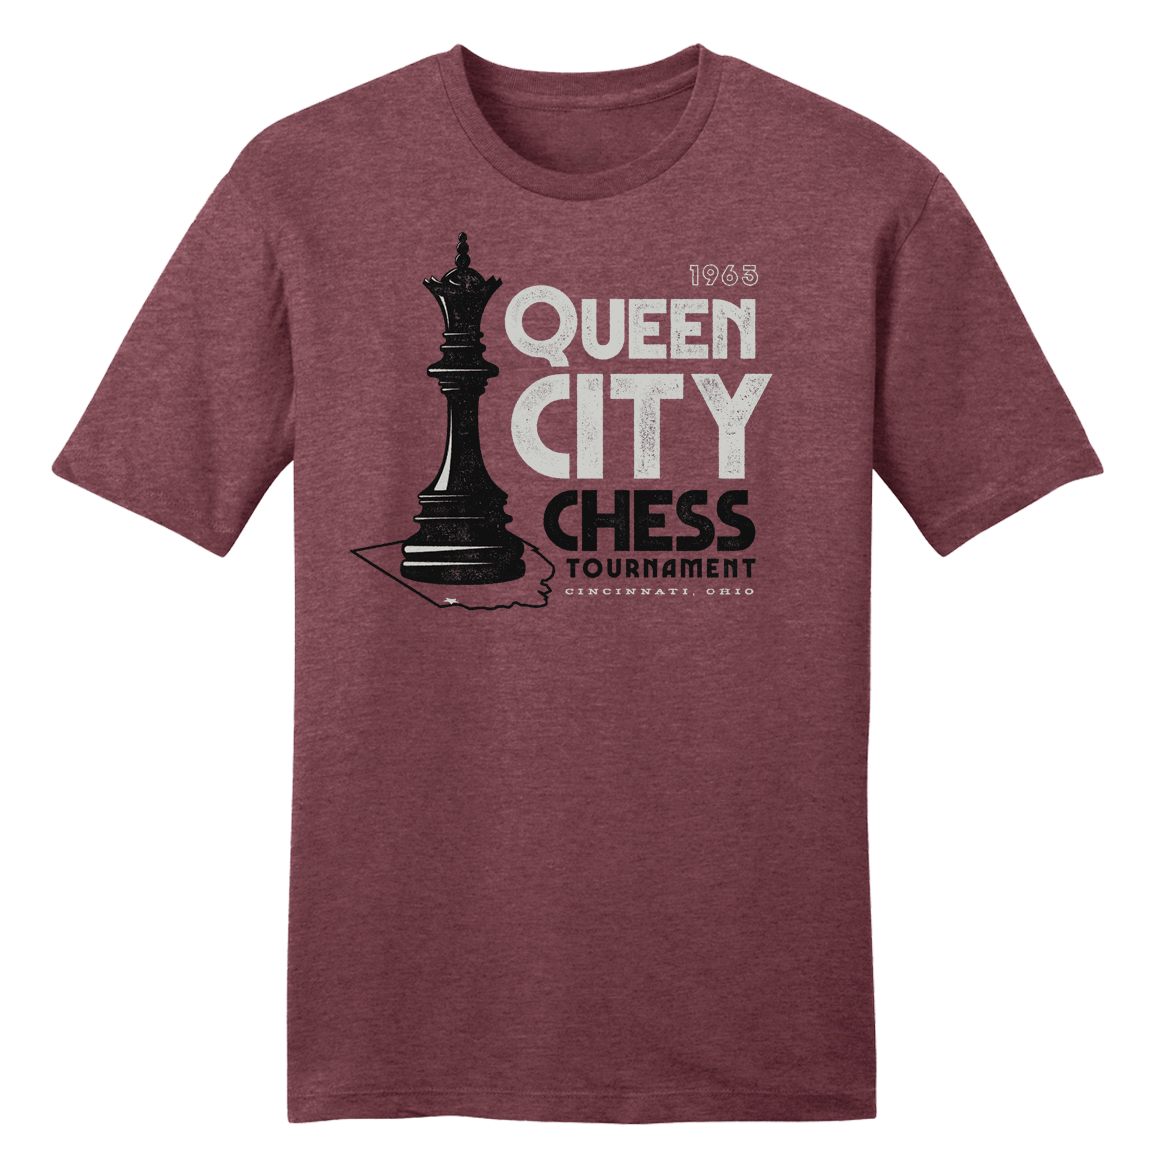 Queen City Chess Tournament 1963 - Cincy Shirts